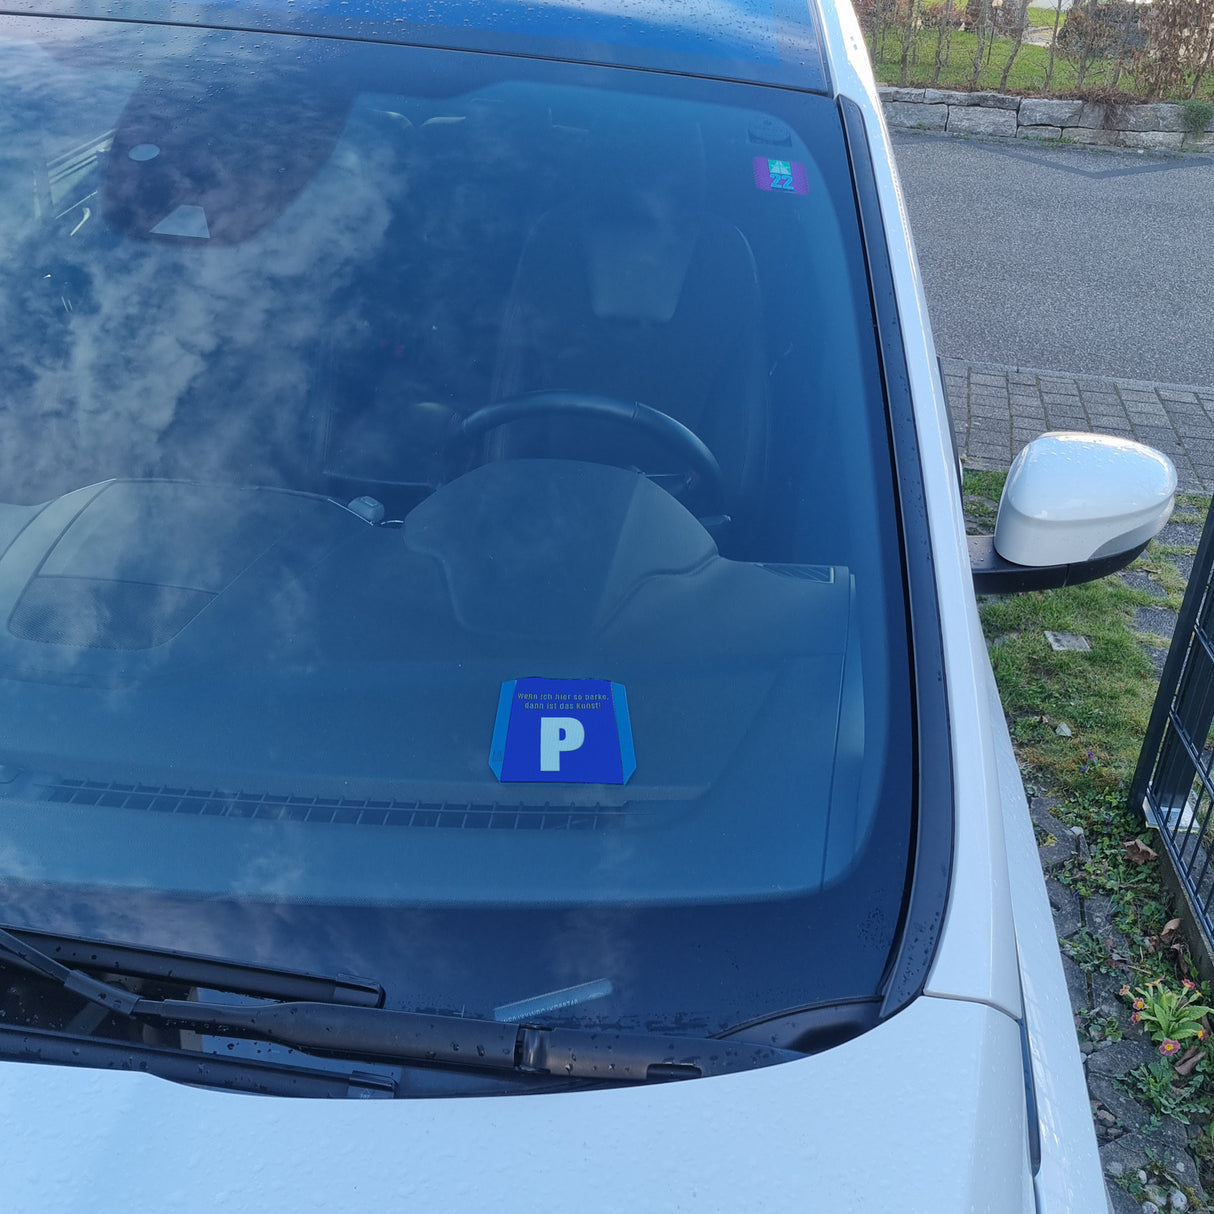 Parkscheibe mit Parkplatzsymbol, lustigem Spruch und 2 Einkaufswagenchips